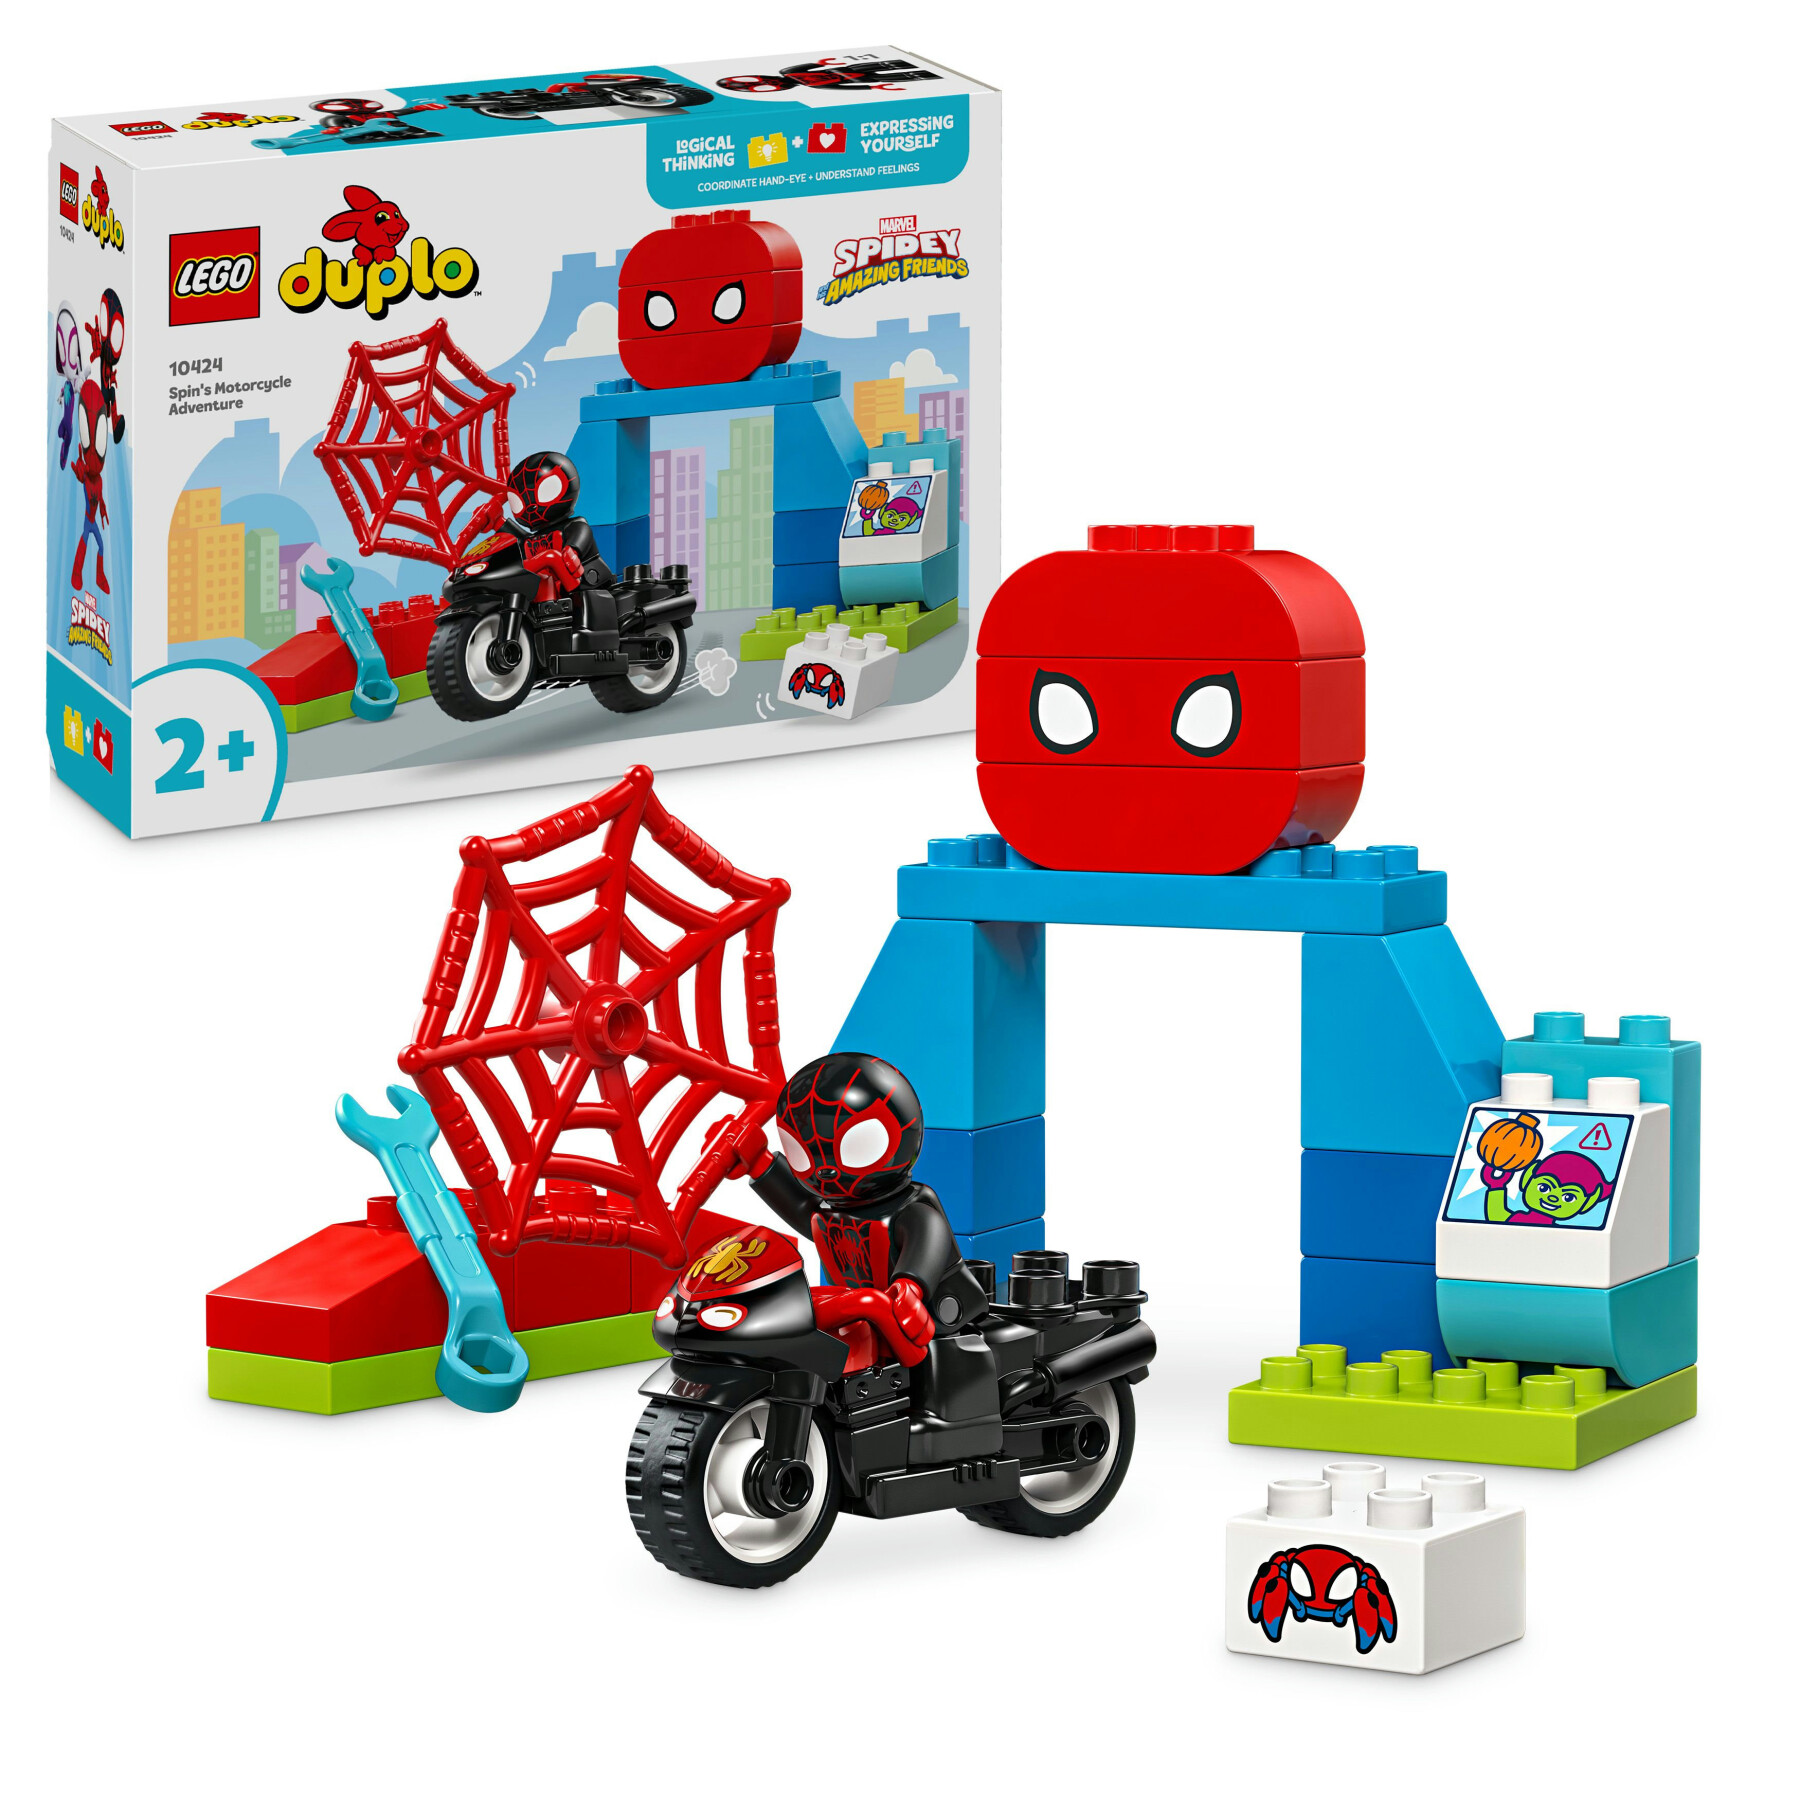 Lego duplo marvel 10424 l’avventura in moto di spin, gioco educativo per bambini 2+ con moto gicattolo, set serie tv spidey - LEGO DUPLO